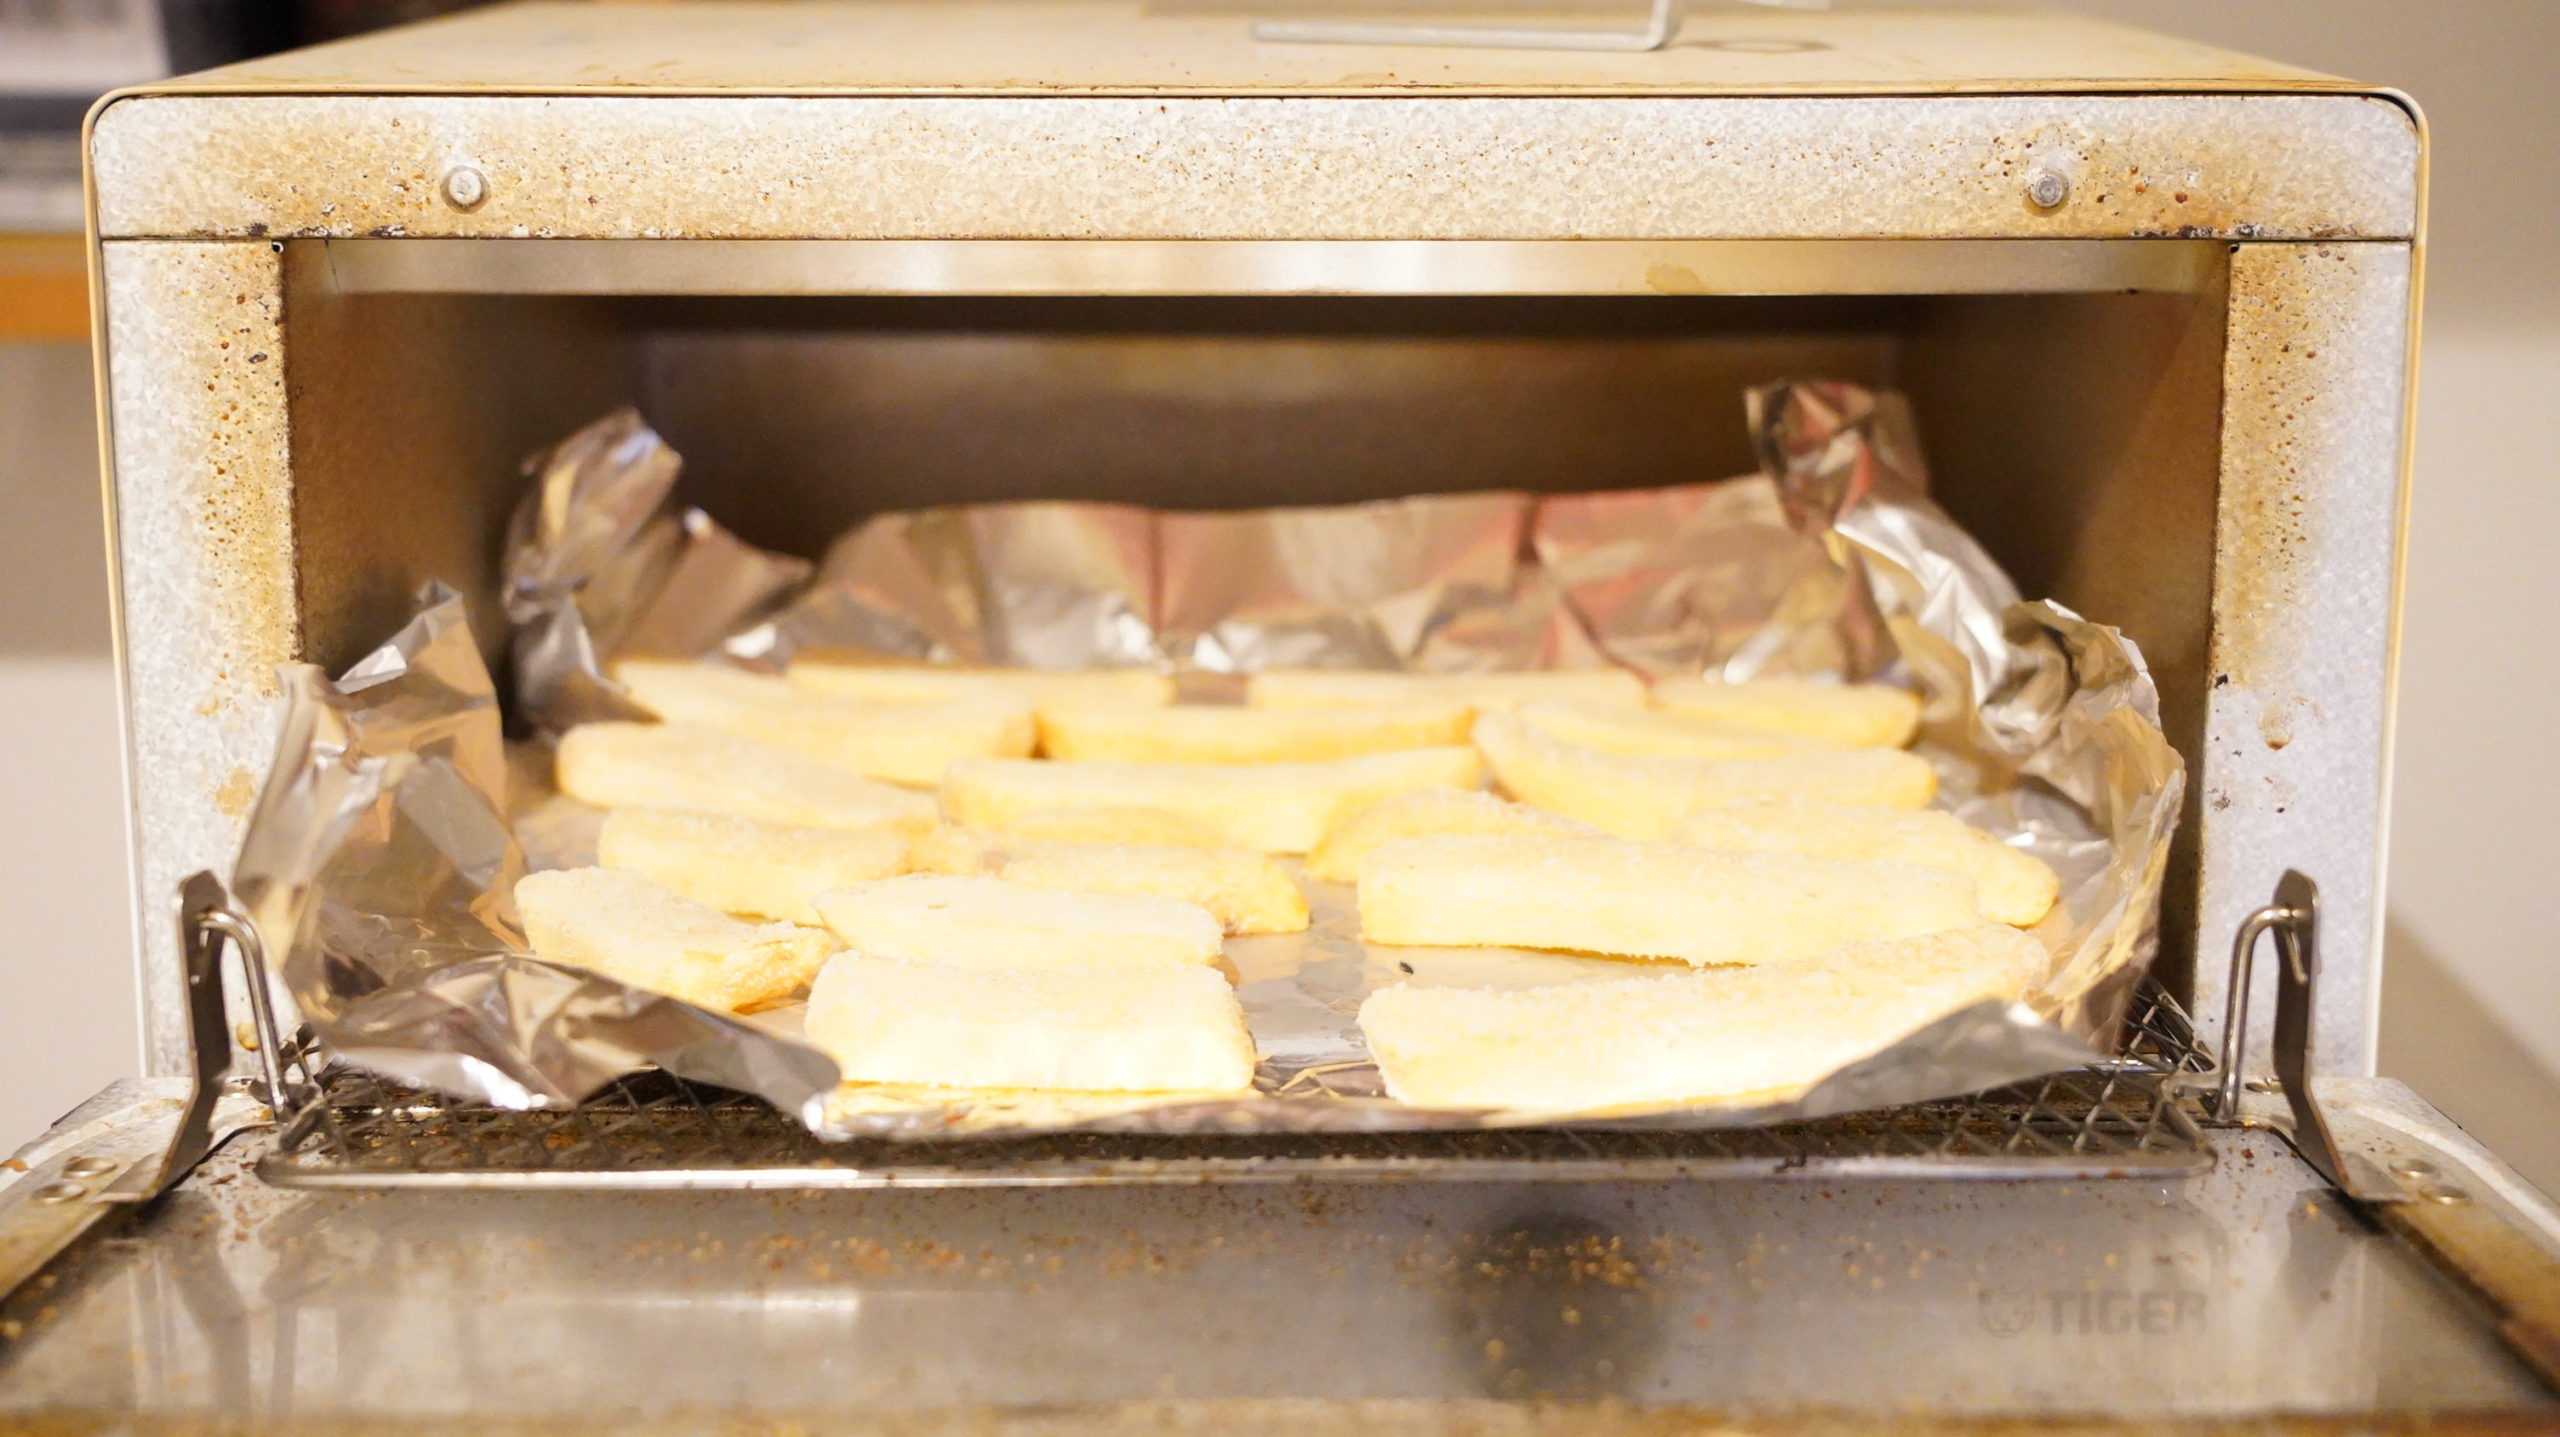 ピカールの冷凍食品「フレンチフライ XL」をオーブントースターで加熱するためにアルミホイルを敷いた写真